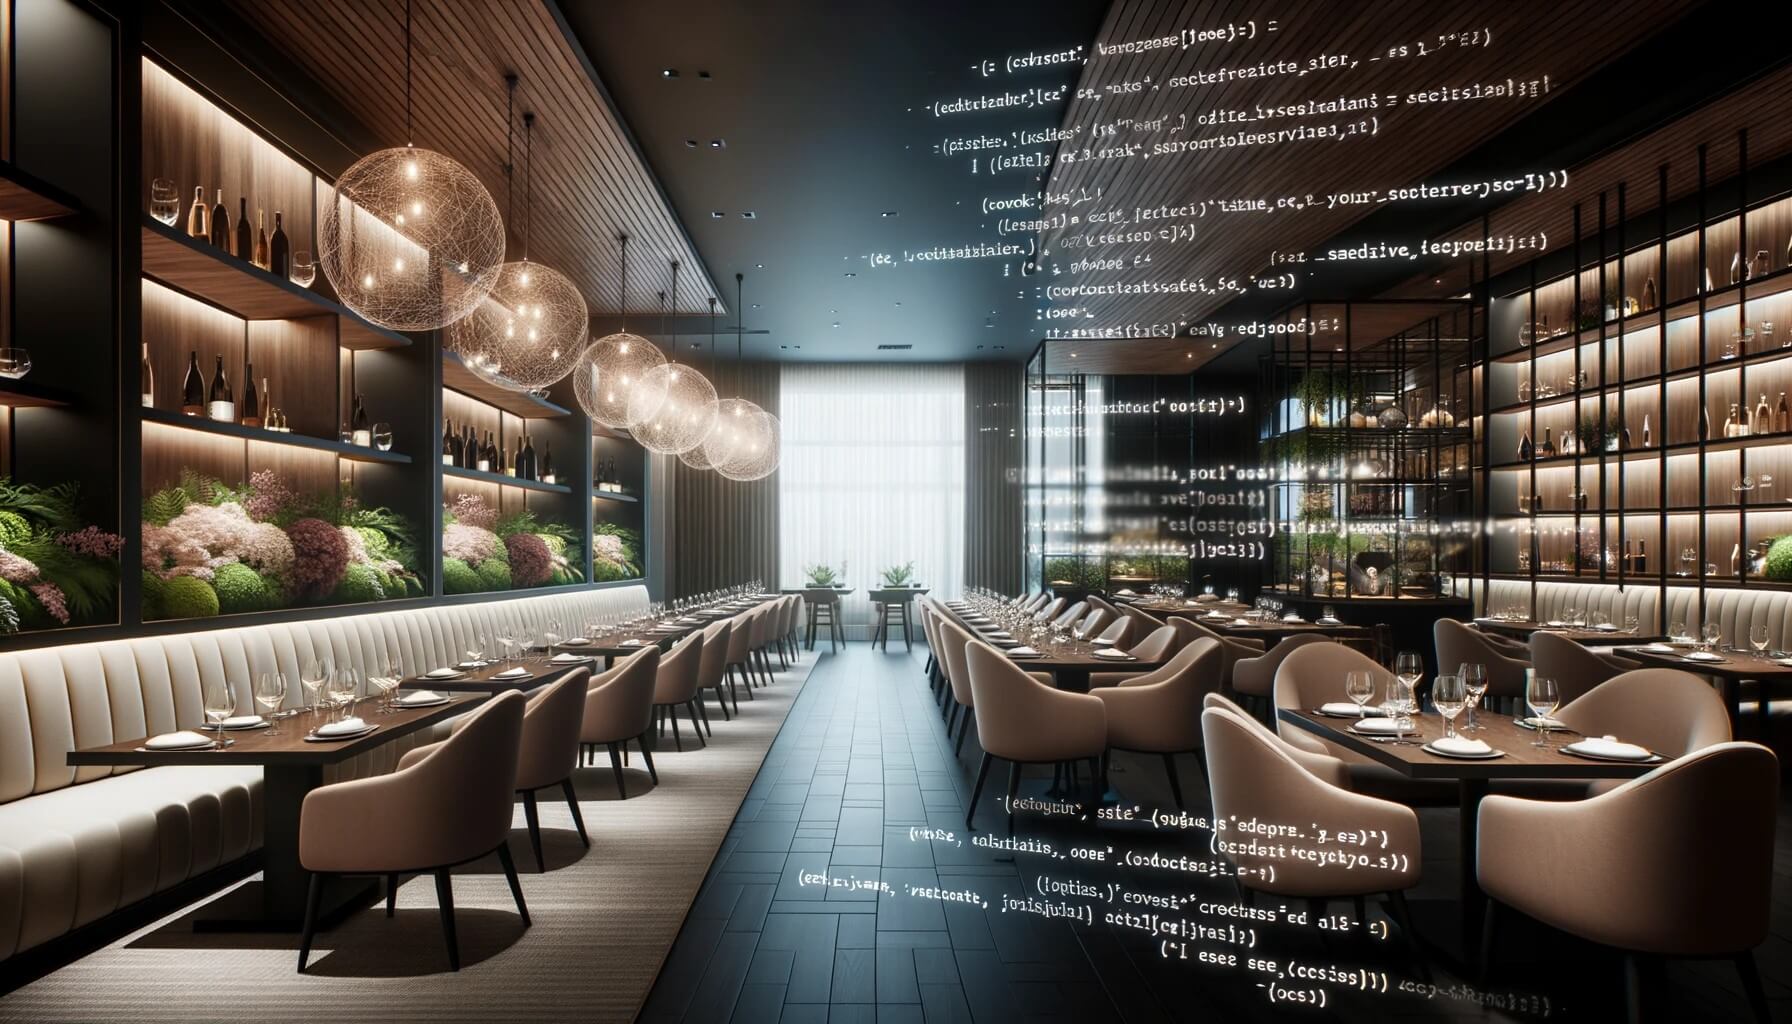 Zeitgenössisches Restaurant mit anspruchsvoller Einrichtung. Halb bedeckt mit transparentem Javascript, das den Einsatz von KI im Gastgewerbe symbolisiert.